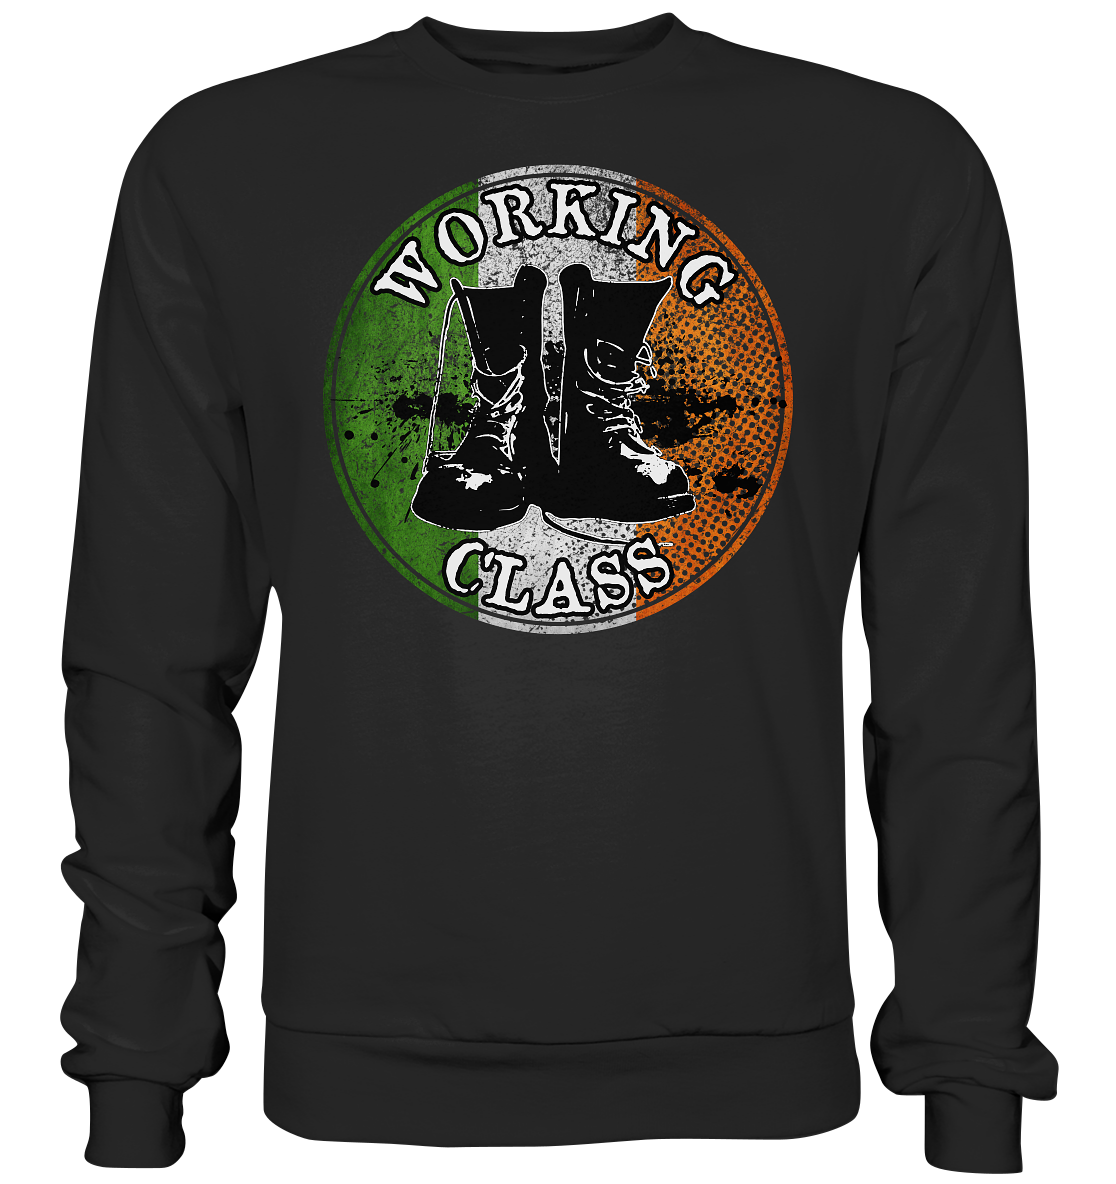 Working Class "Ireland" - Premium Sweatshirt